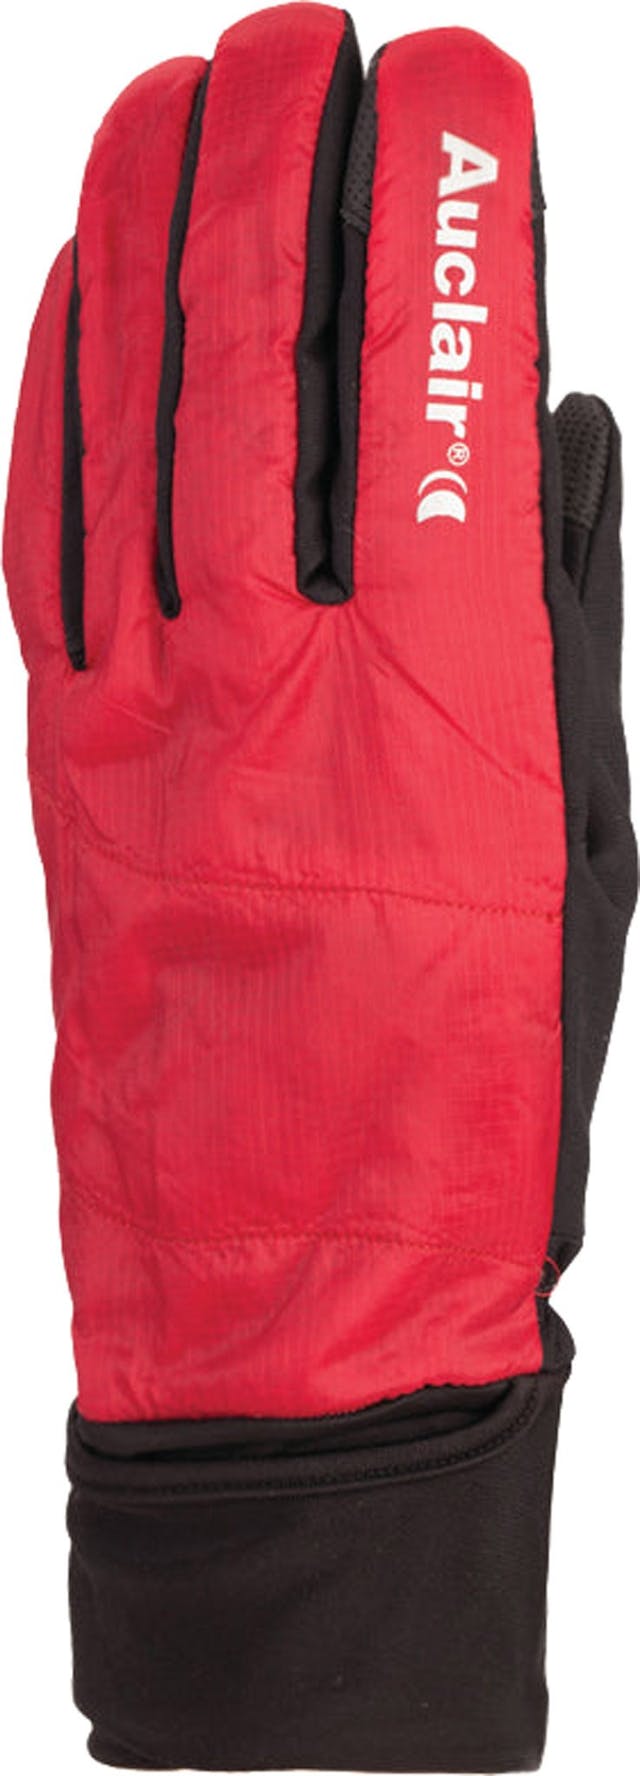 Product image for Refuge Lightweight Gloves - Unisex